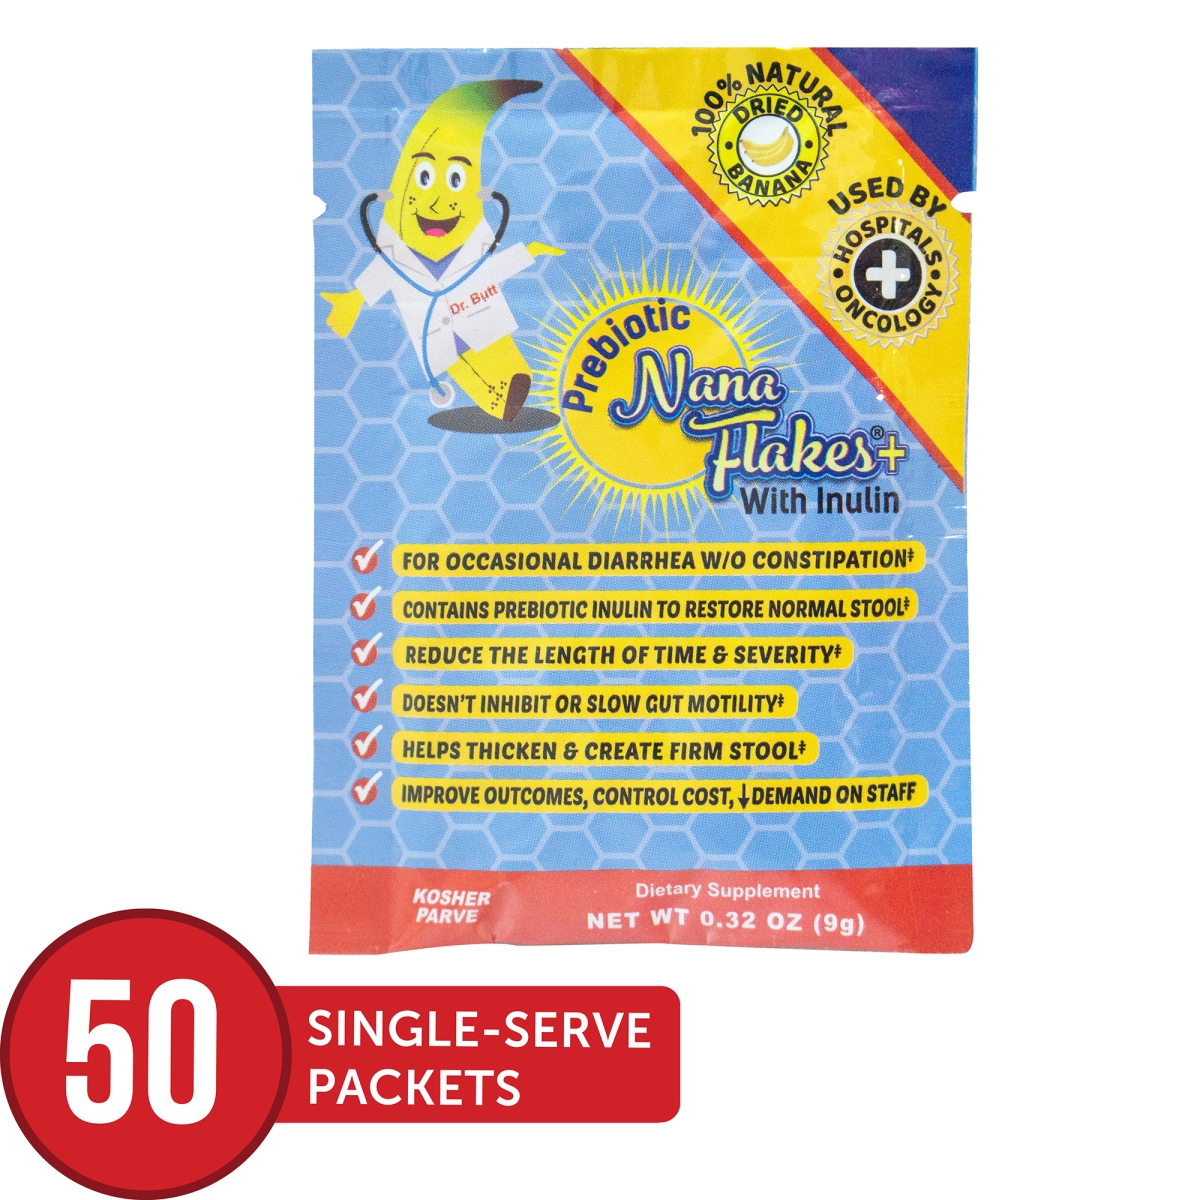 ND Labs 680-PB PKT 50CS Prebiotic Nana Flakes+ 100% Dried Natural Banana with Inulin - 50 Individual Packets